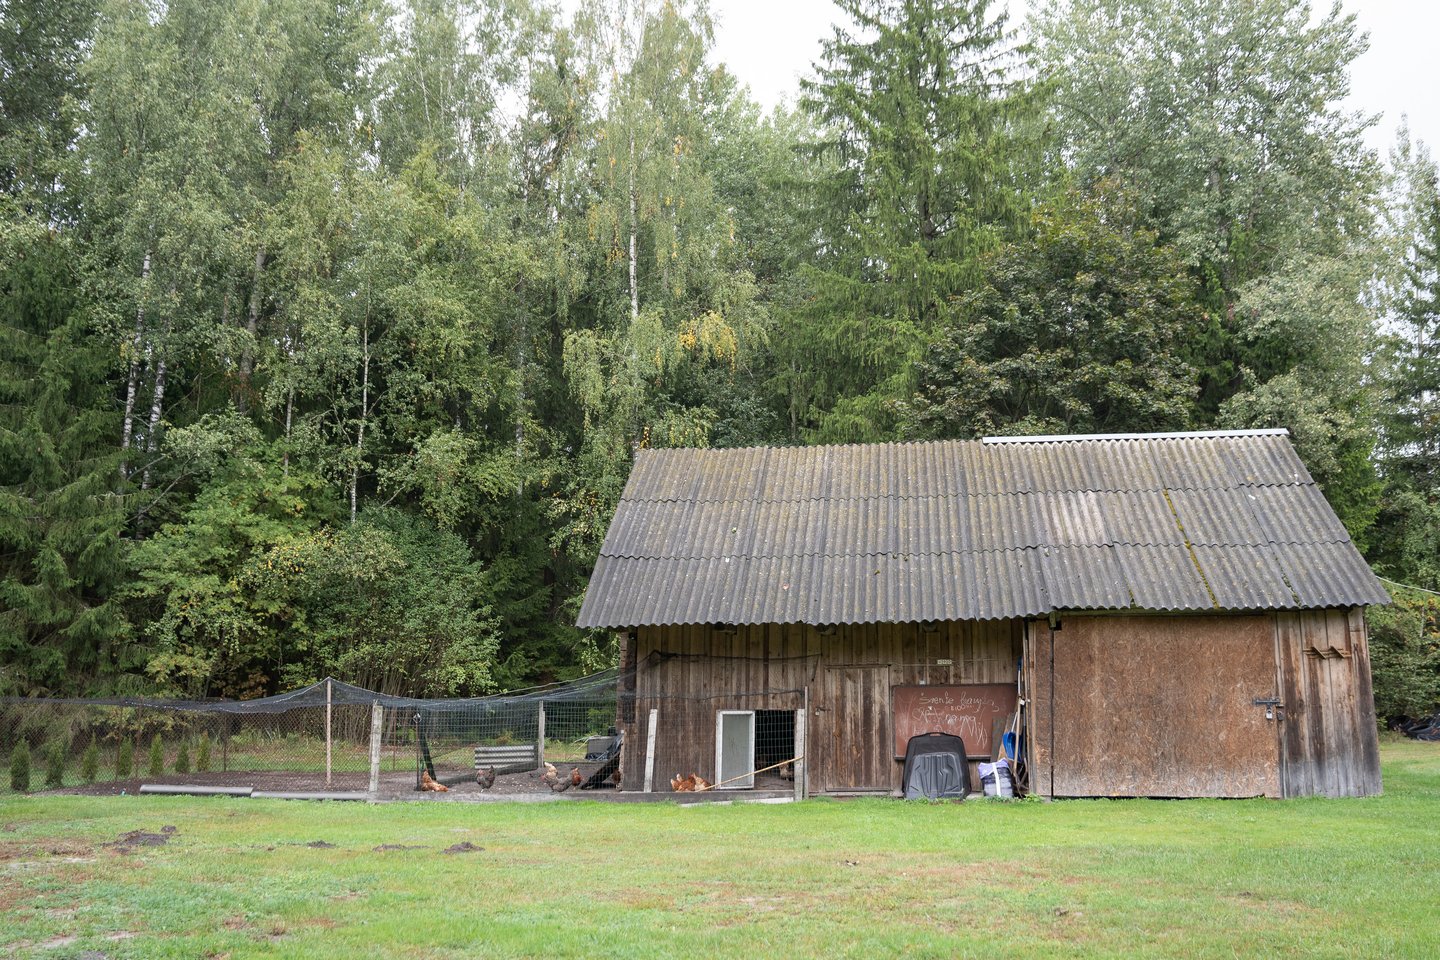  Šioje sodyboje Kauno rajone buvo įsikūręs maištininkų vedliu vadinamas J.Maskvytis. <br> R.Vilkelio nuotr.